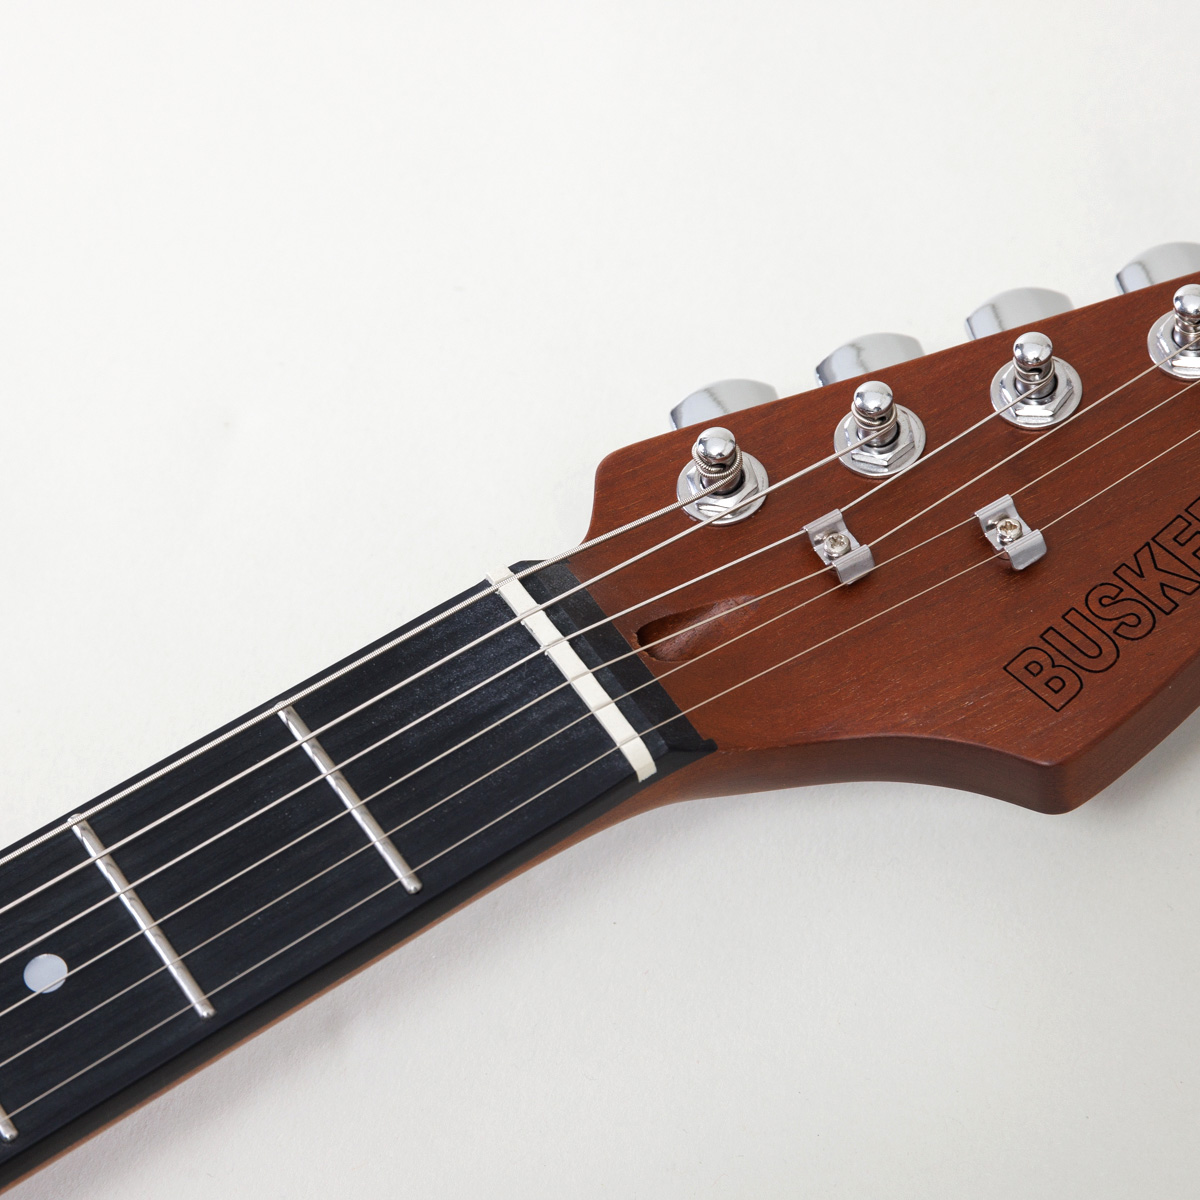 BST-Standard エレキギター初心者12点セット【ヤマハアンプ付き】ストラトキャスタータイプ ローステッドメイプルネック パステルカラー 関連画像